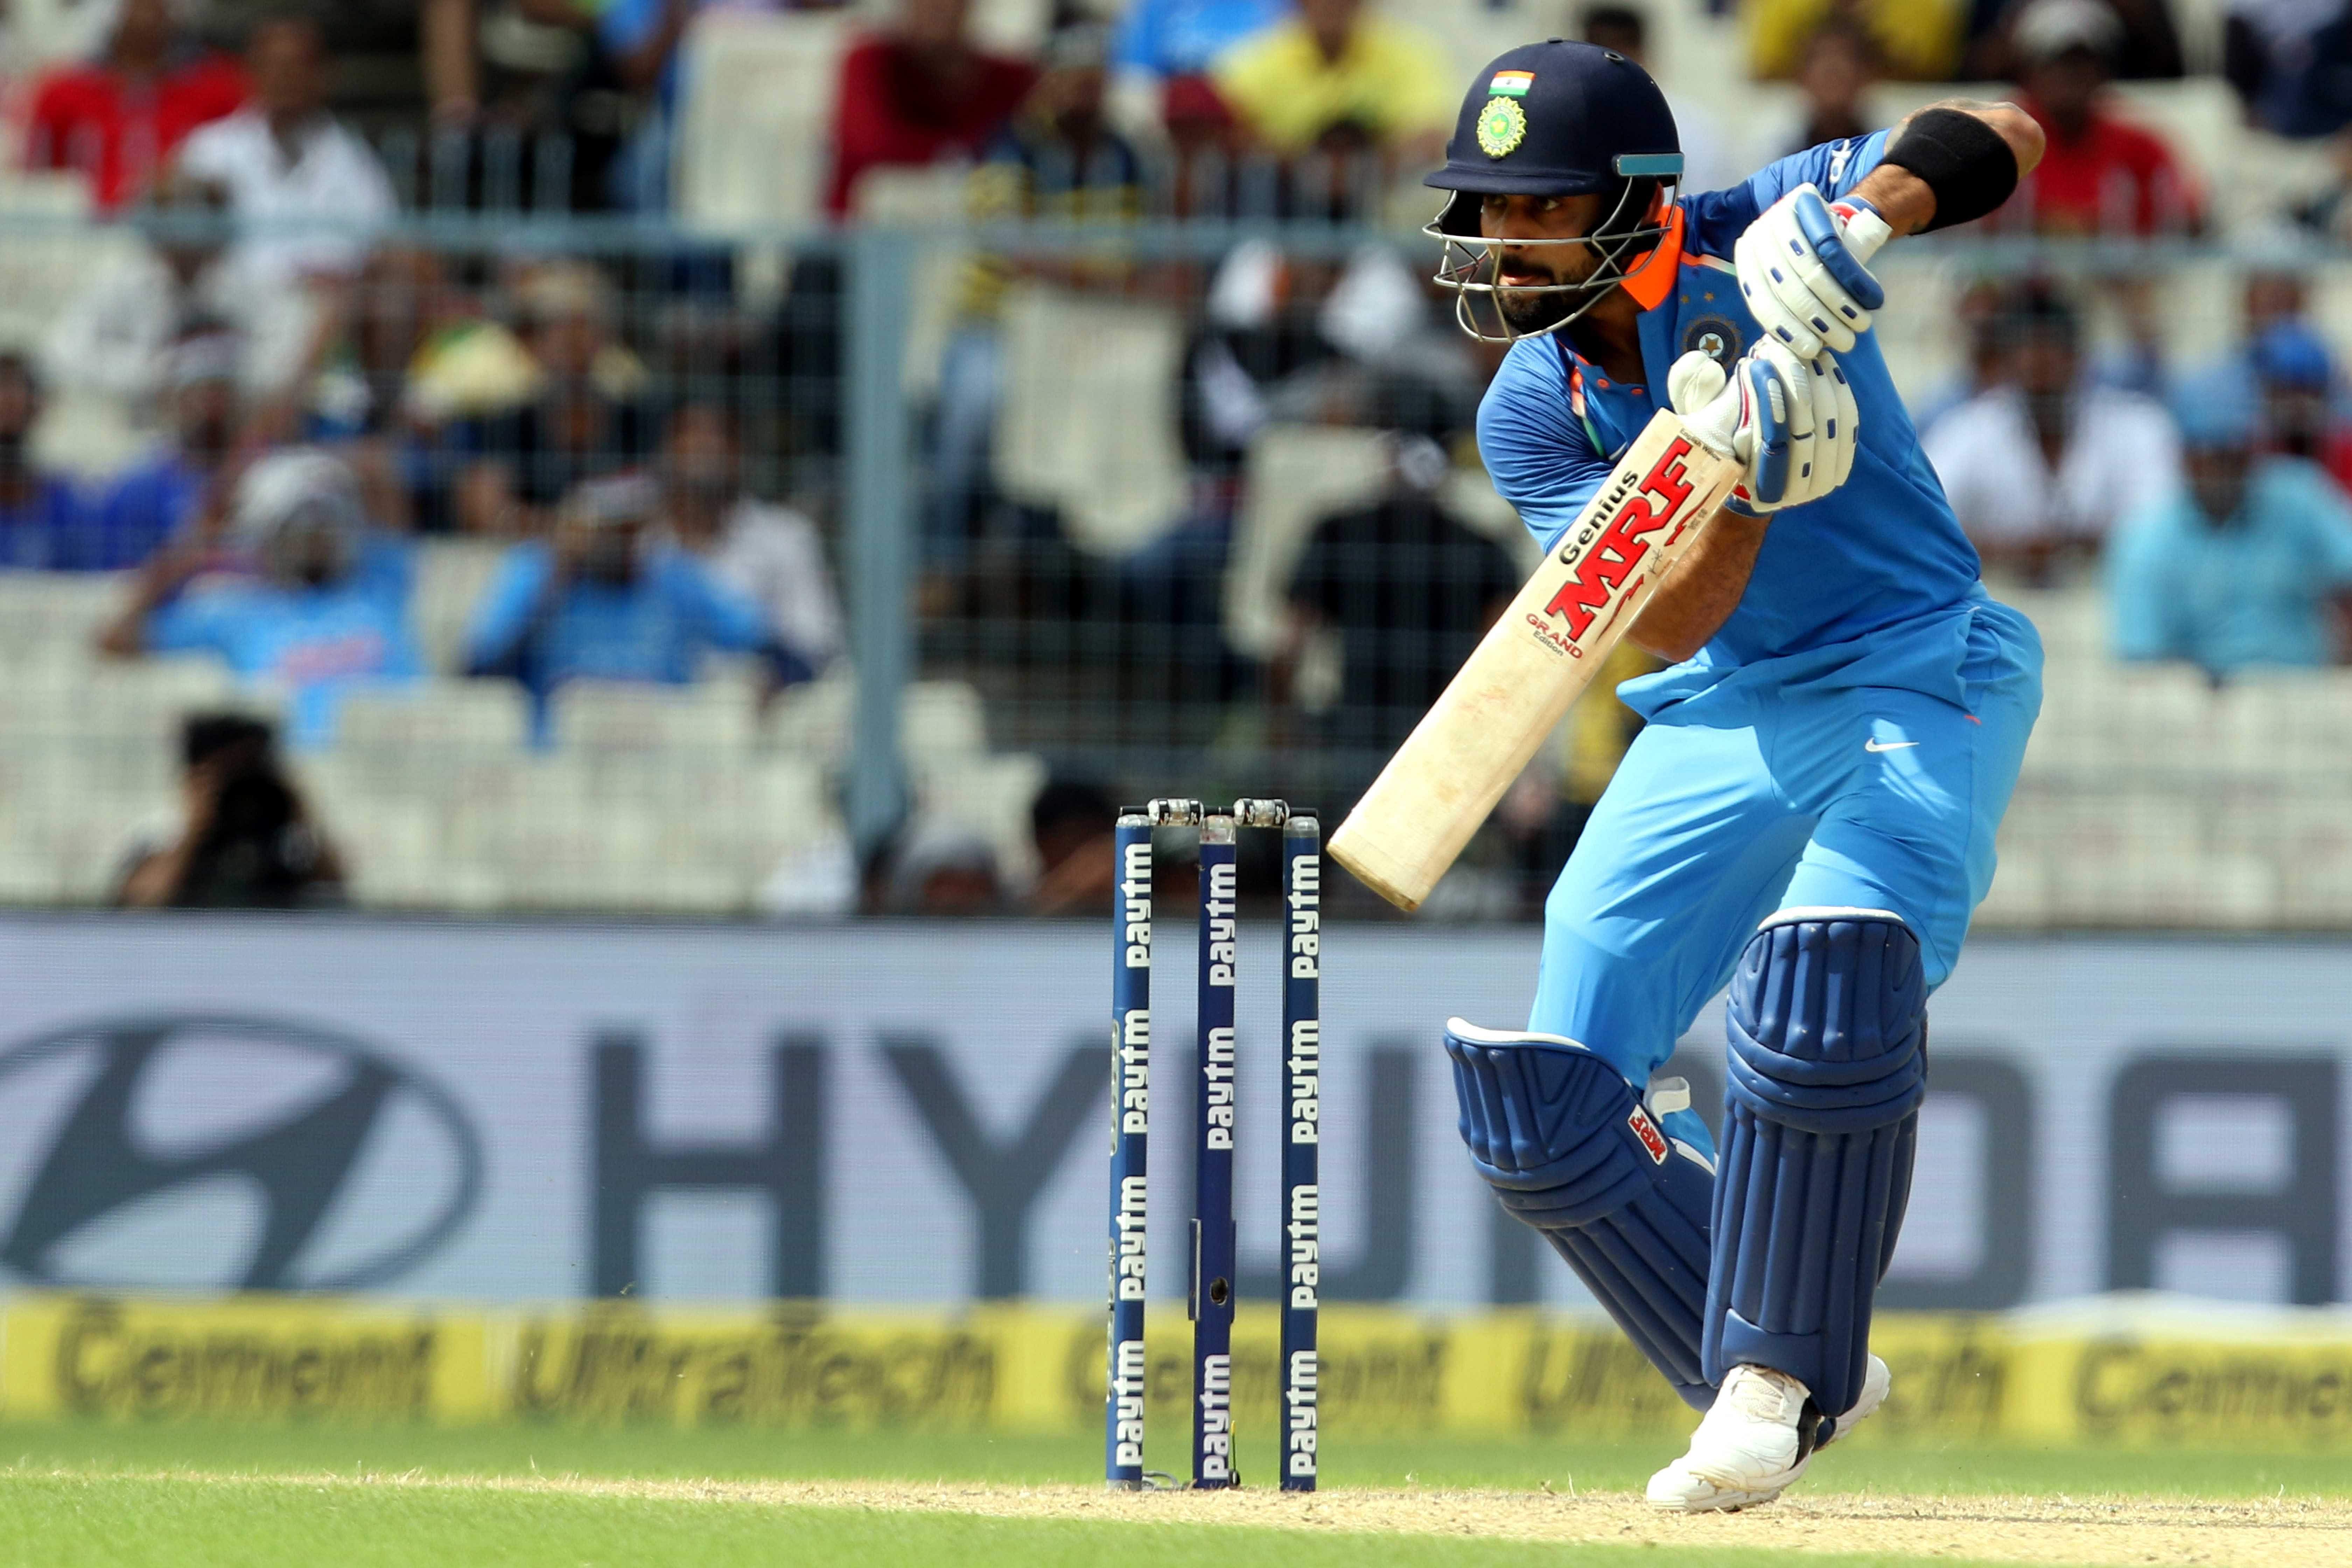 Live Cricket Score - India vs Australia, 2nd ODI, Kolkata | Cricbuzz.com